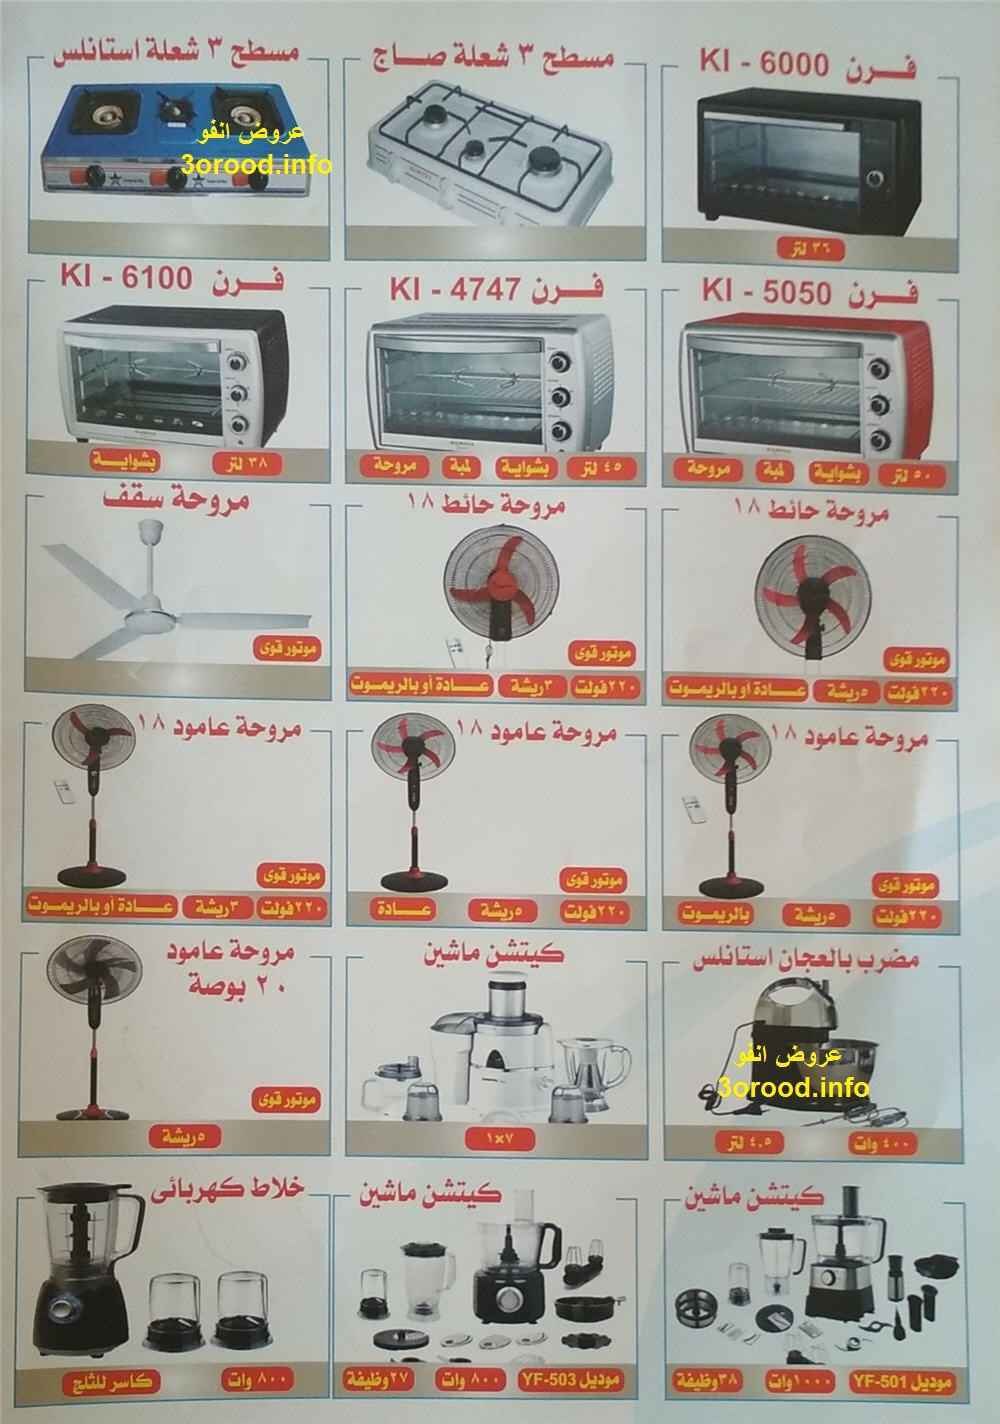 معرض القاهرة الدولى للاجهزة الكهربائية 2018  بارض المعارض